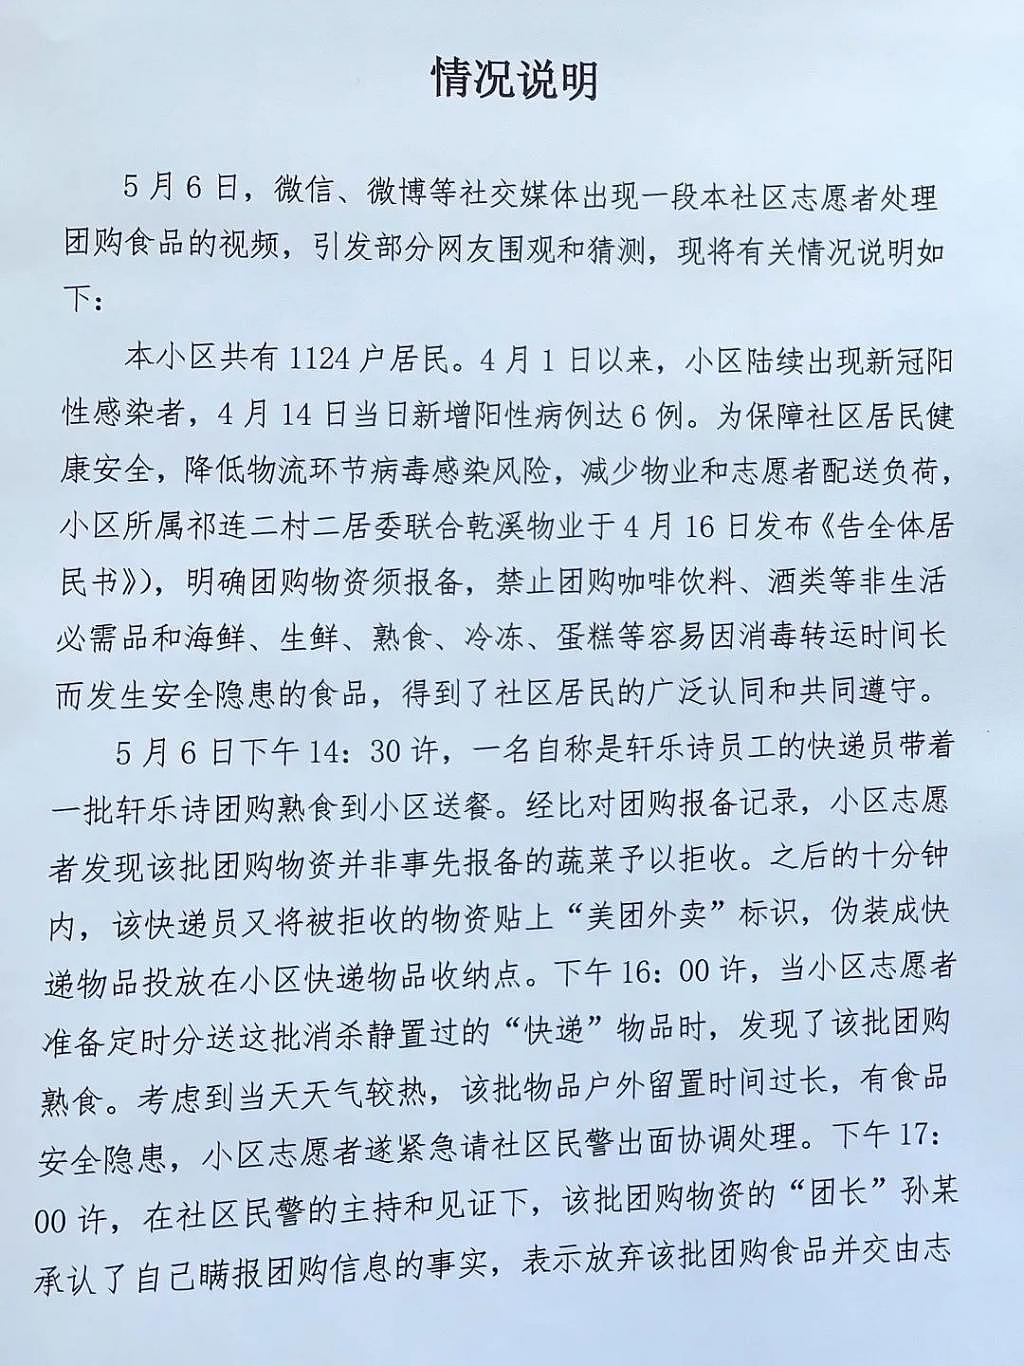 上海一志愿者扔掉居民团购食品，居委会：“团长”瞒报团购信息 - 3